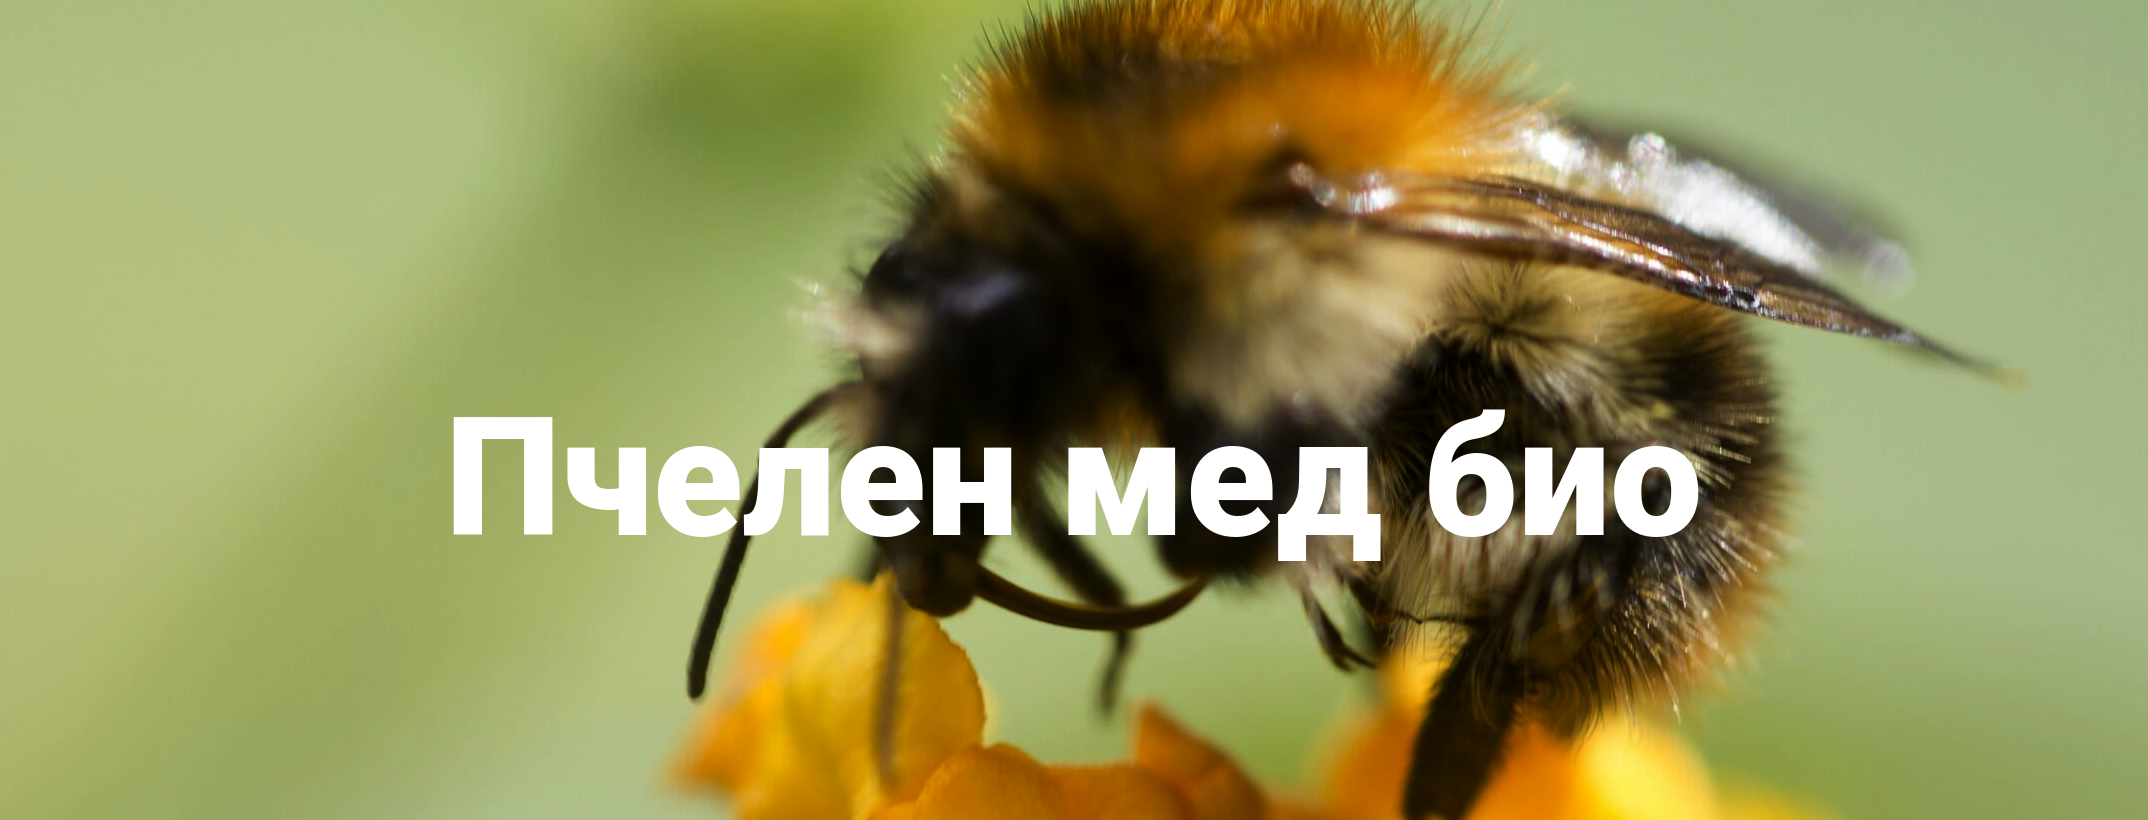 Пчелен мед био